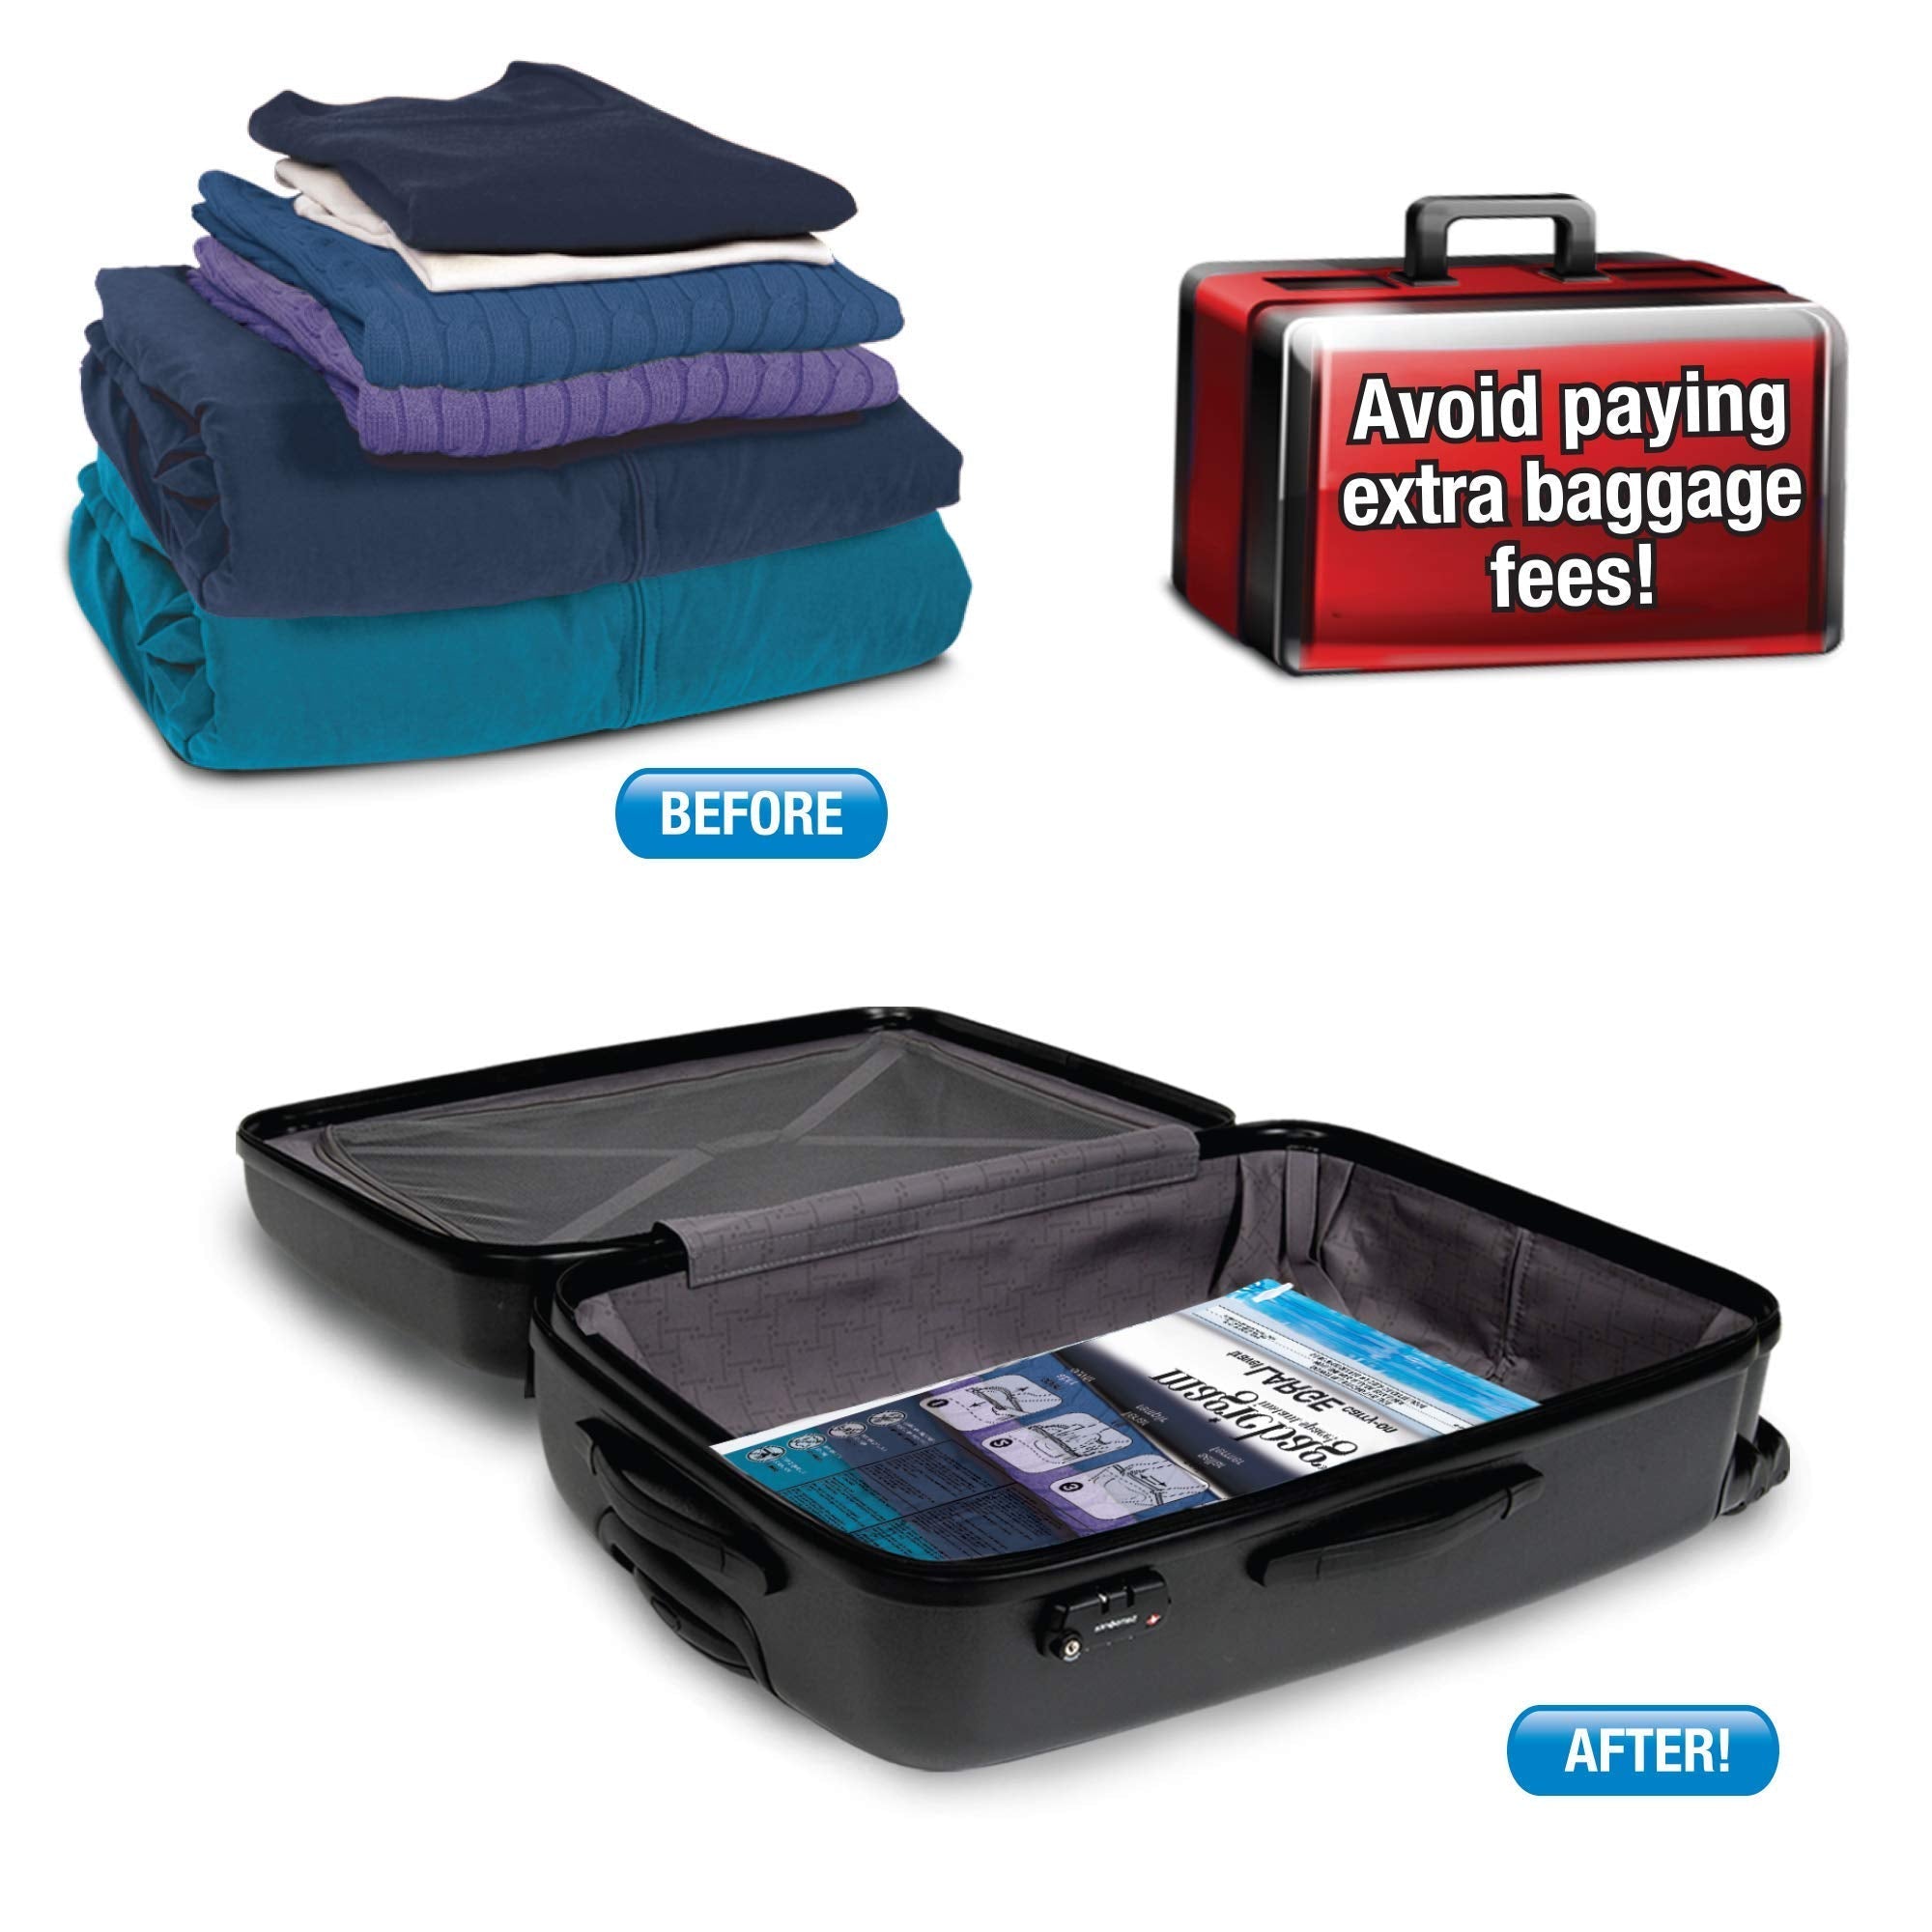 https://www.shopsmartdesign.com/cdn/shop/products/magicbag-instant-space-saver-storage-flat-suitcase-travel-smart-design-magicbag-5718412-200-incrementing-number-489251.jpg?v=1679340431